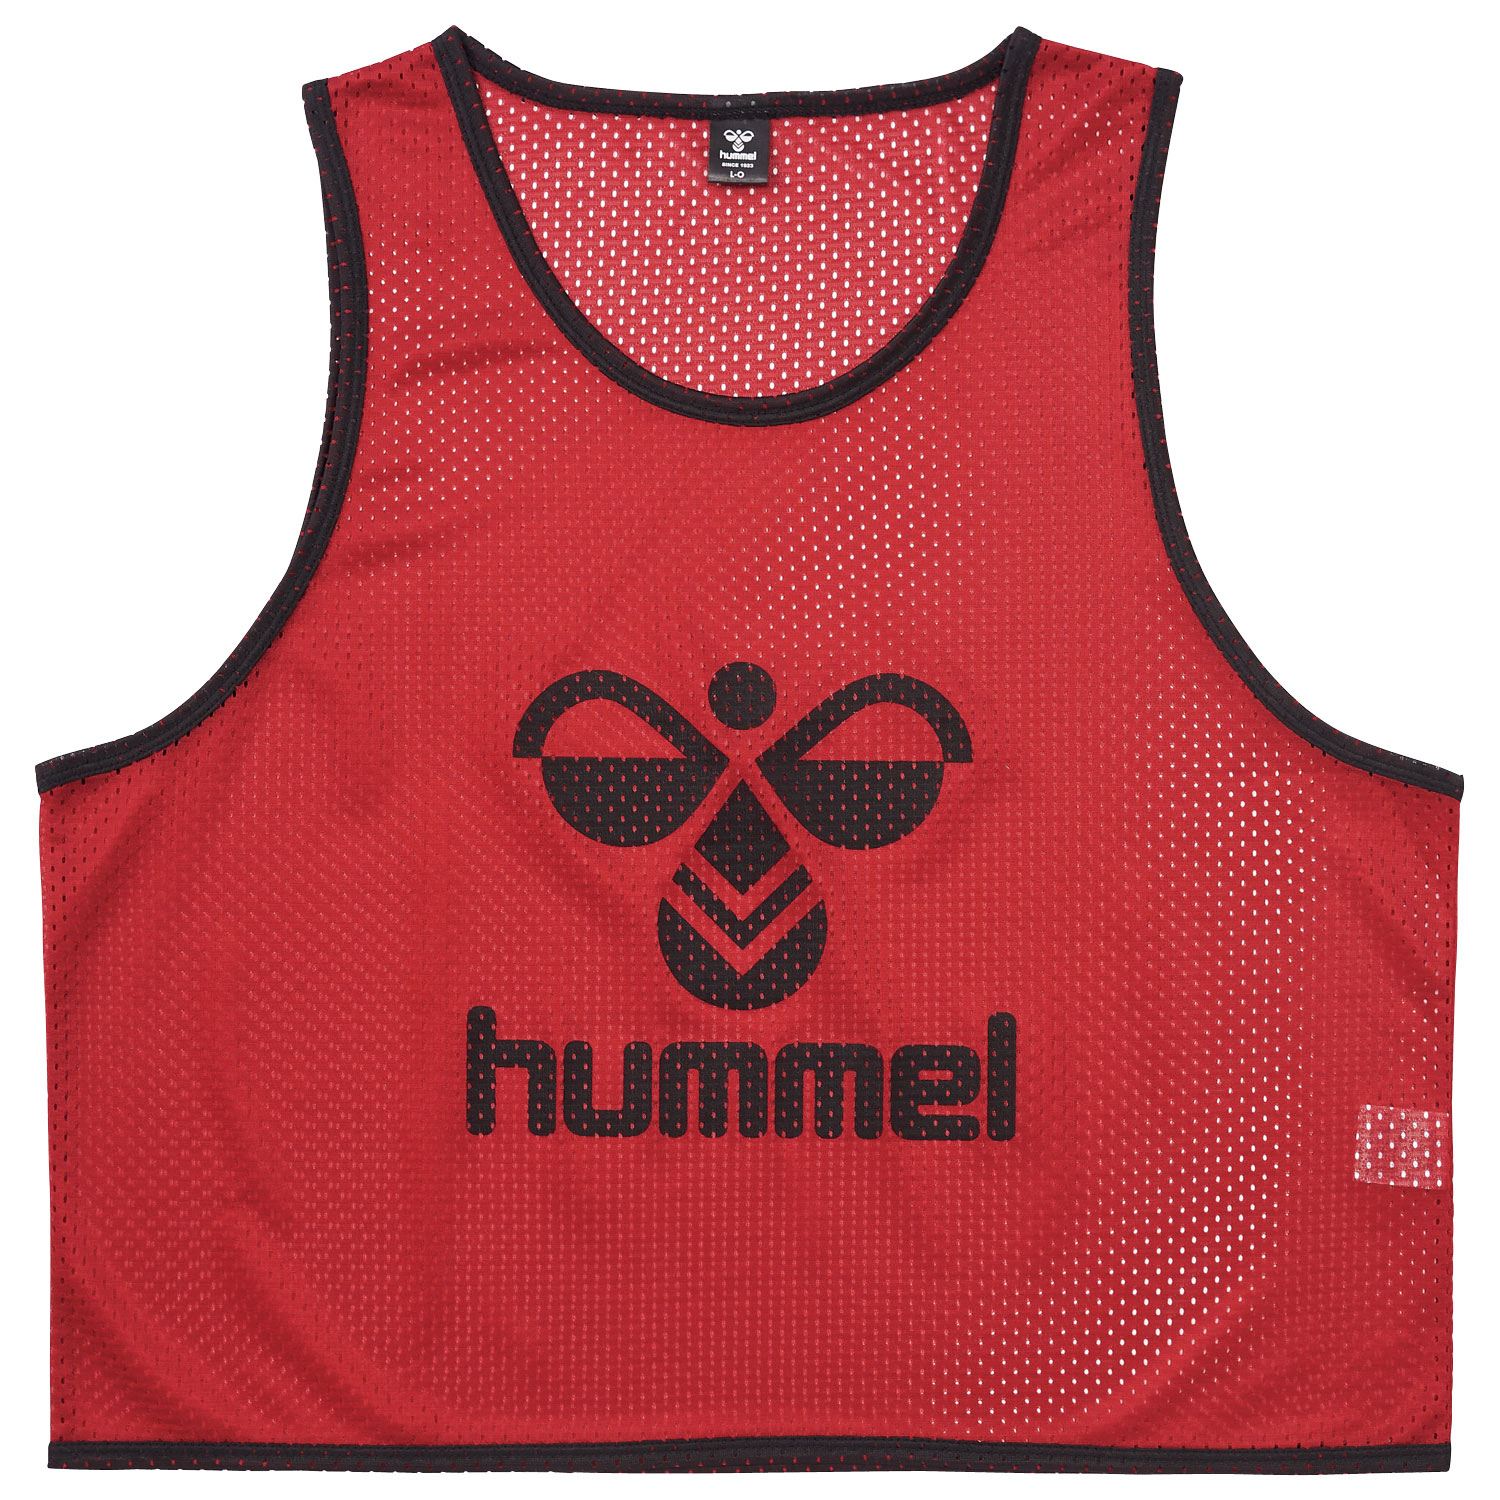 hummel(ヒュンメル)-S トレーニングビブス(1枚) レッド シャツ SSK 